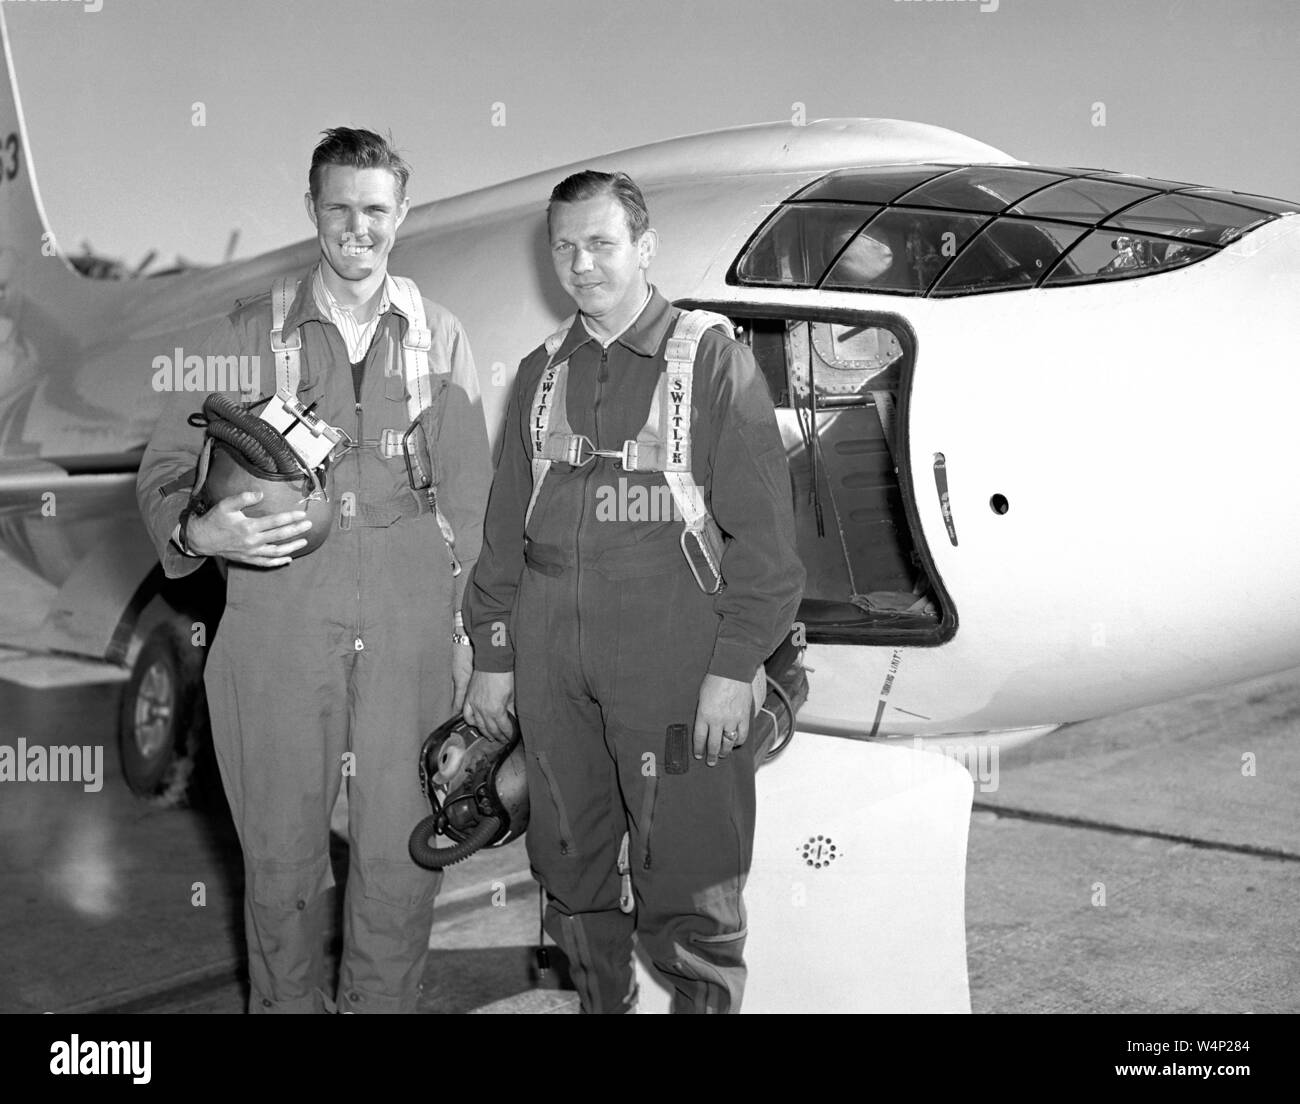 NACA piloti Robert Champine e Herbert Hoover in posa accanto a Bell Aircraft Corporation X-1-2, Settembre, 1949. Immagine cortesia Nazionale Aeronautica e Spaziale Administration (NASA). () Foto Stock